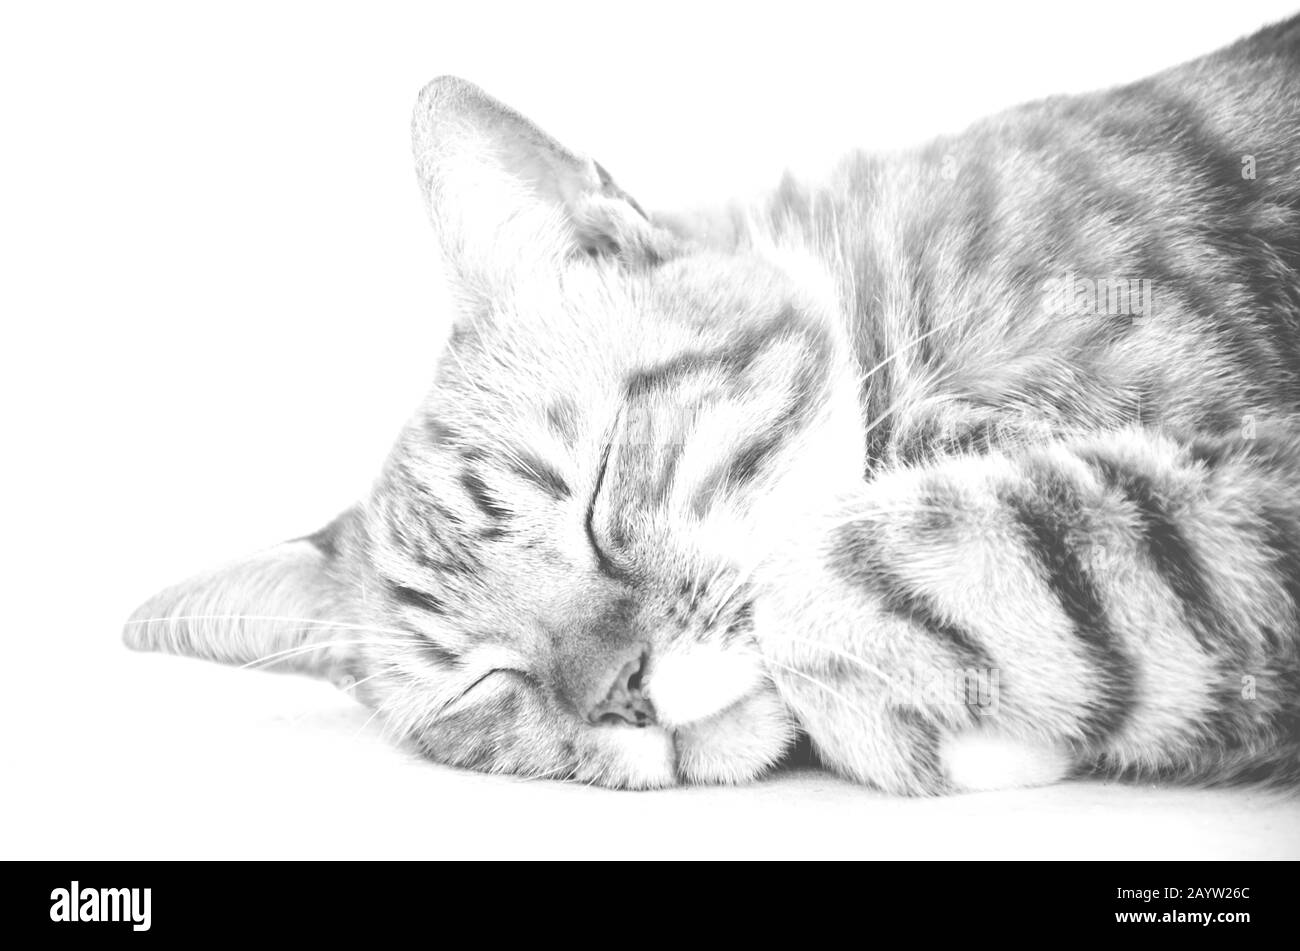 Después de la preparación es hora de una siesta apropiada. Fotografía en blanco y negro de un gato de siesta. DOF superficial. Foto de stock